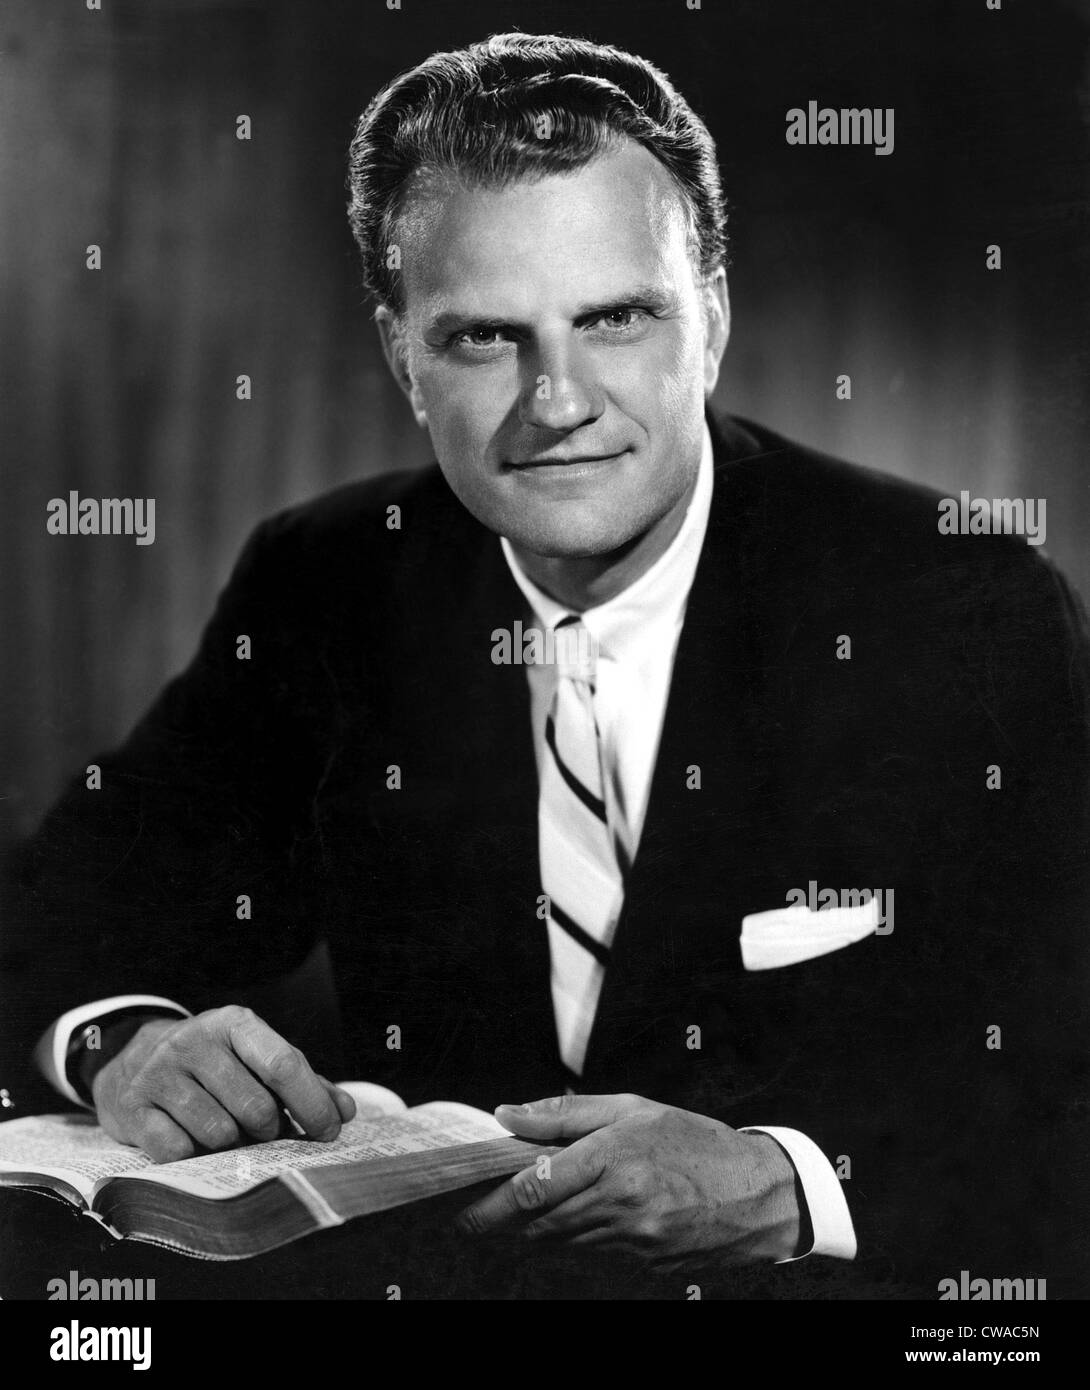 Billy Graham . Evangéliste avec Bible. Né le 11/7/18 dans la publicité photo à partir de 1964.. Avec la permission de la CSU : Archives / Everett Collection Banque D'Images